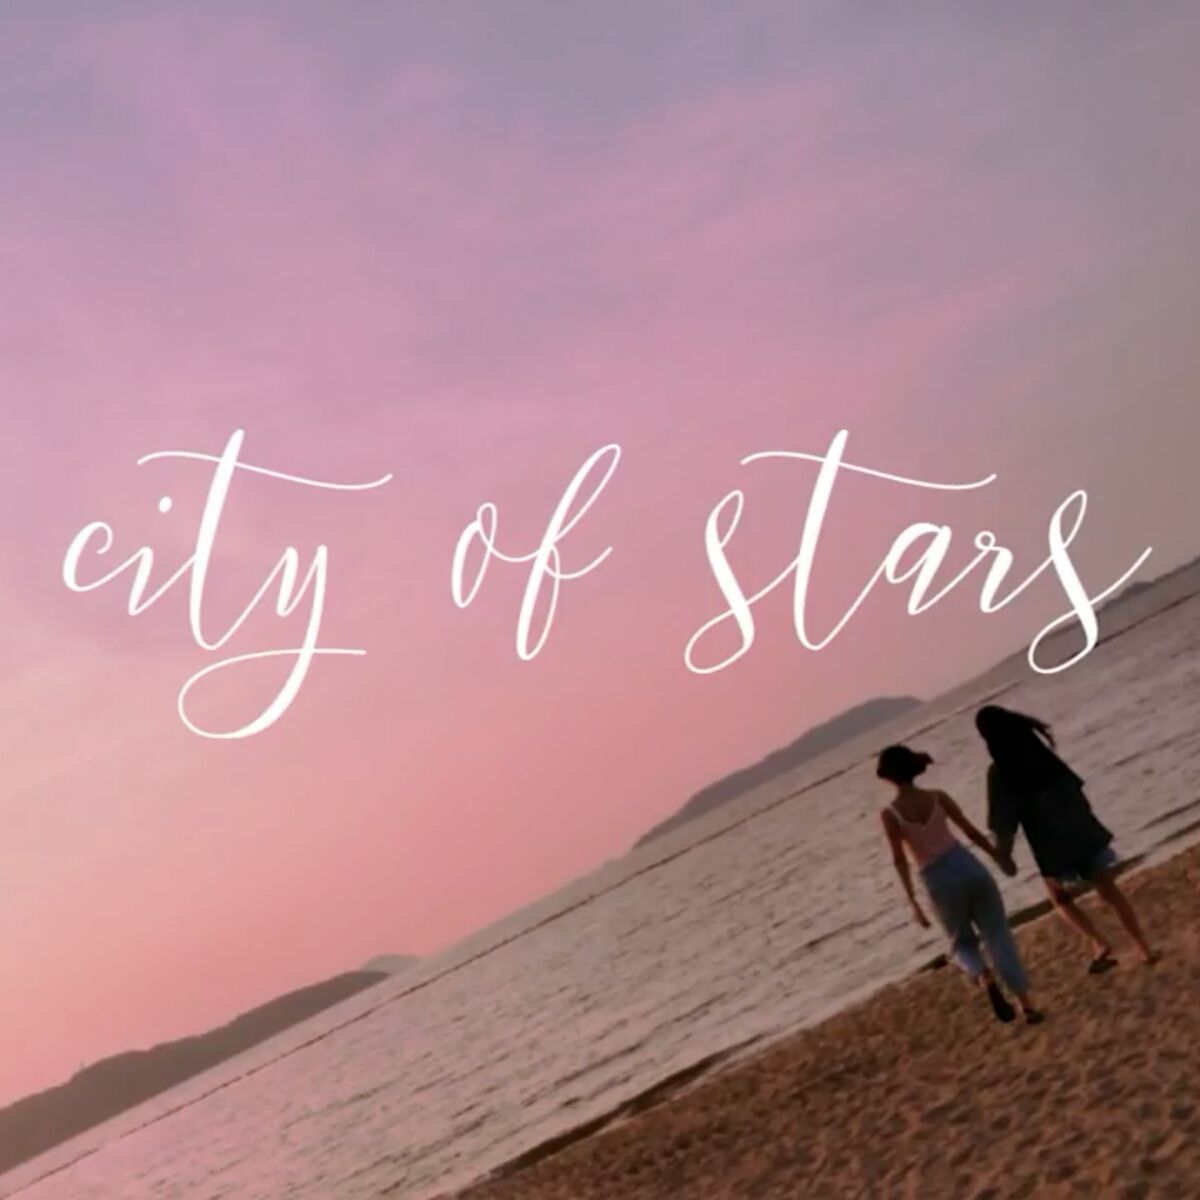 화사 - City of Stars(LaLa Land OST Ukulele Ver.) (애잔, 잔잔, 째즈, 블루스)